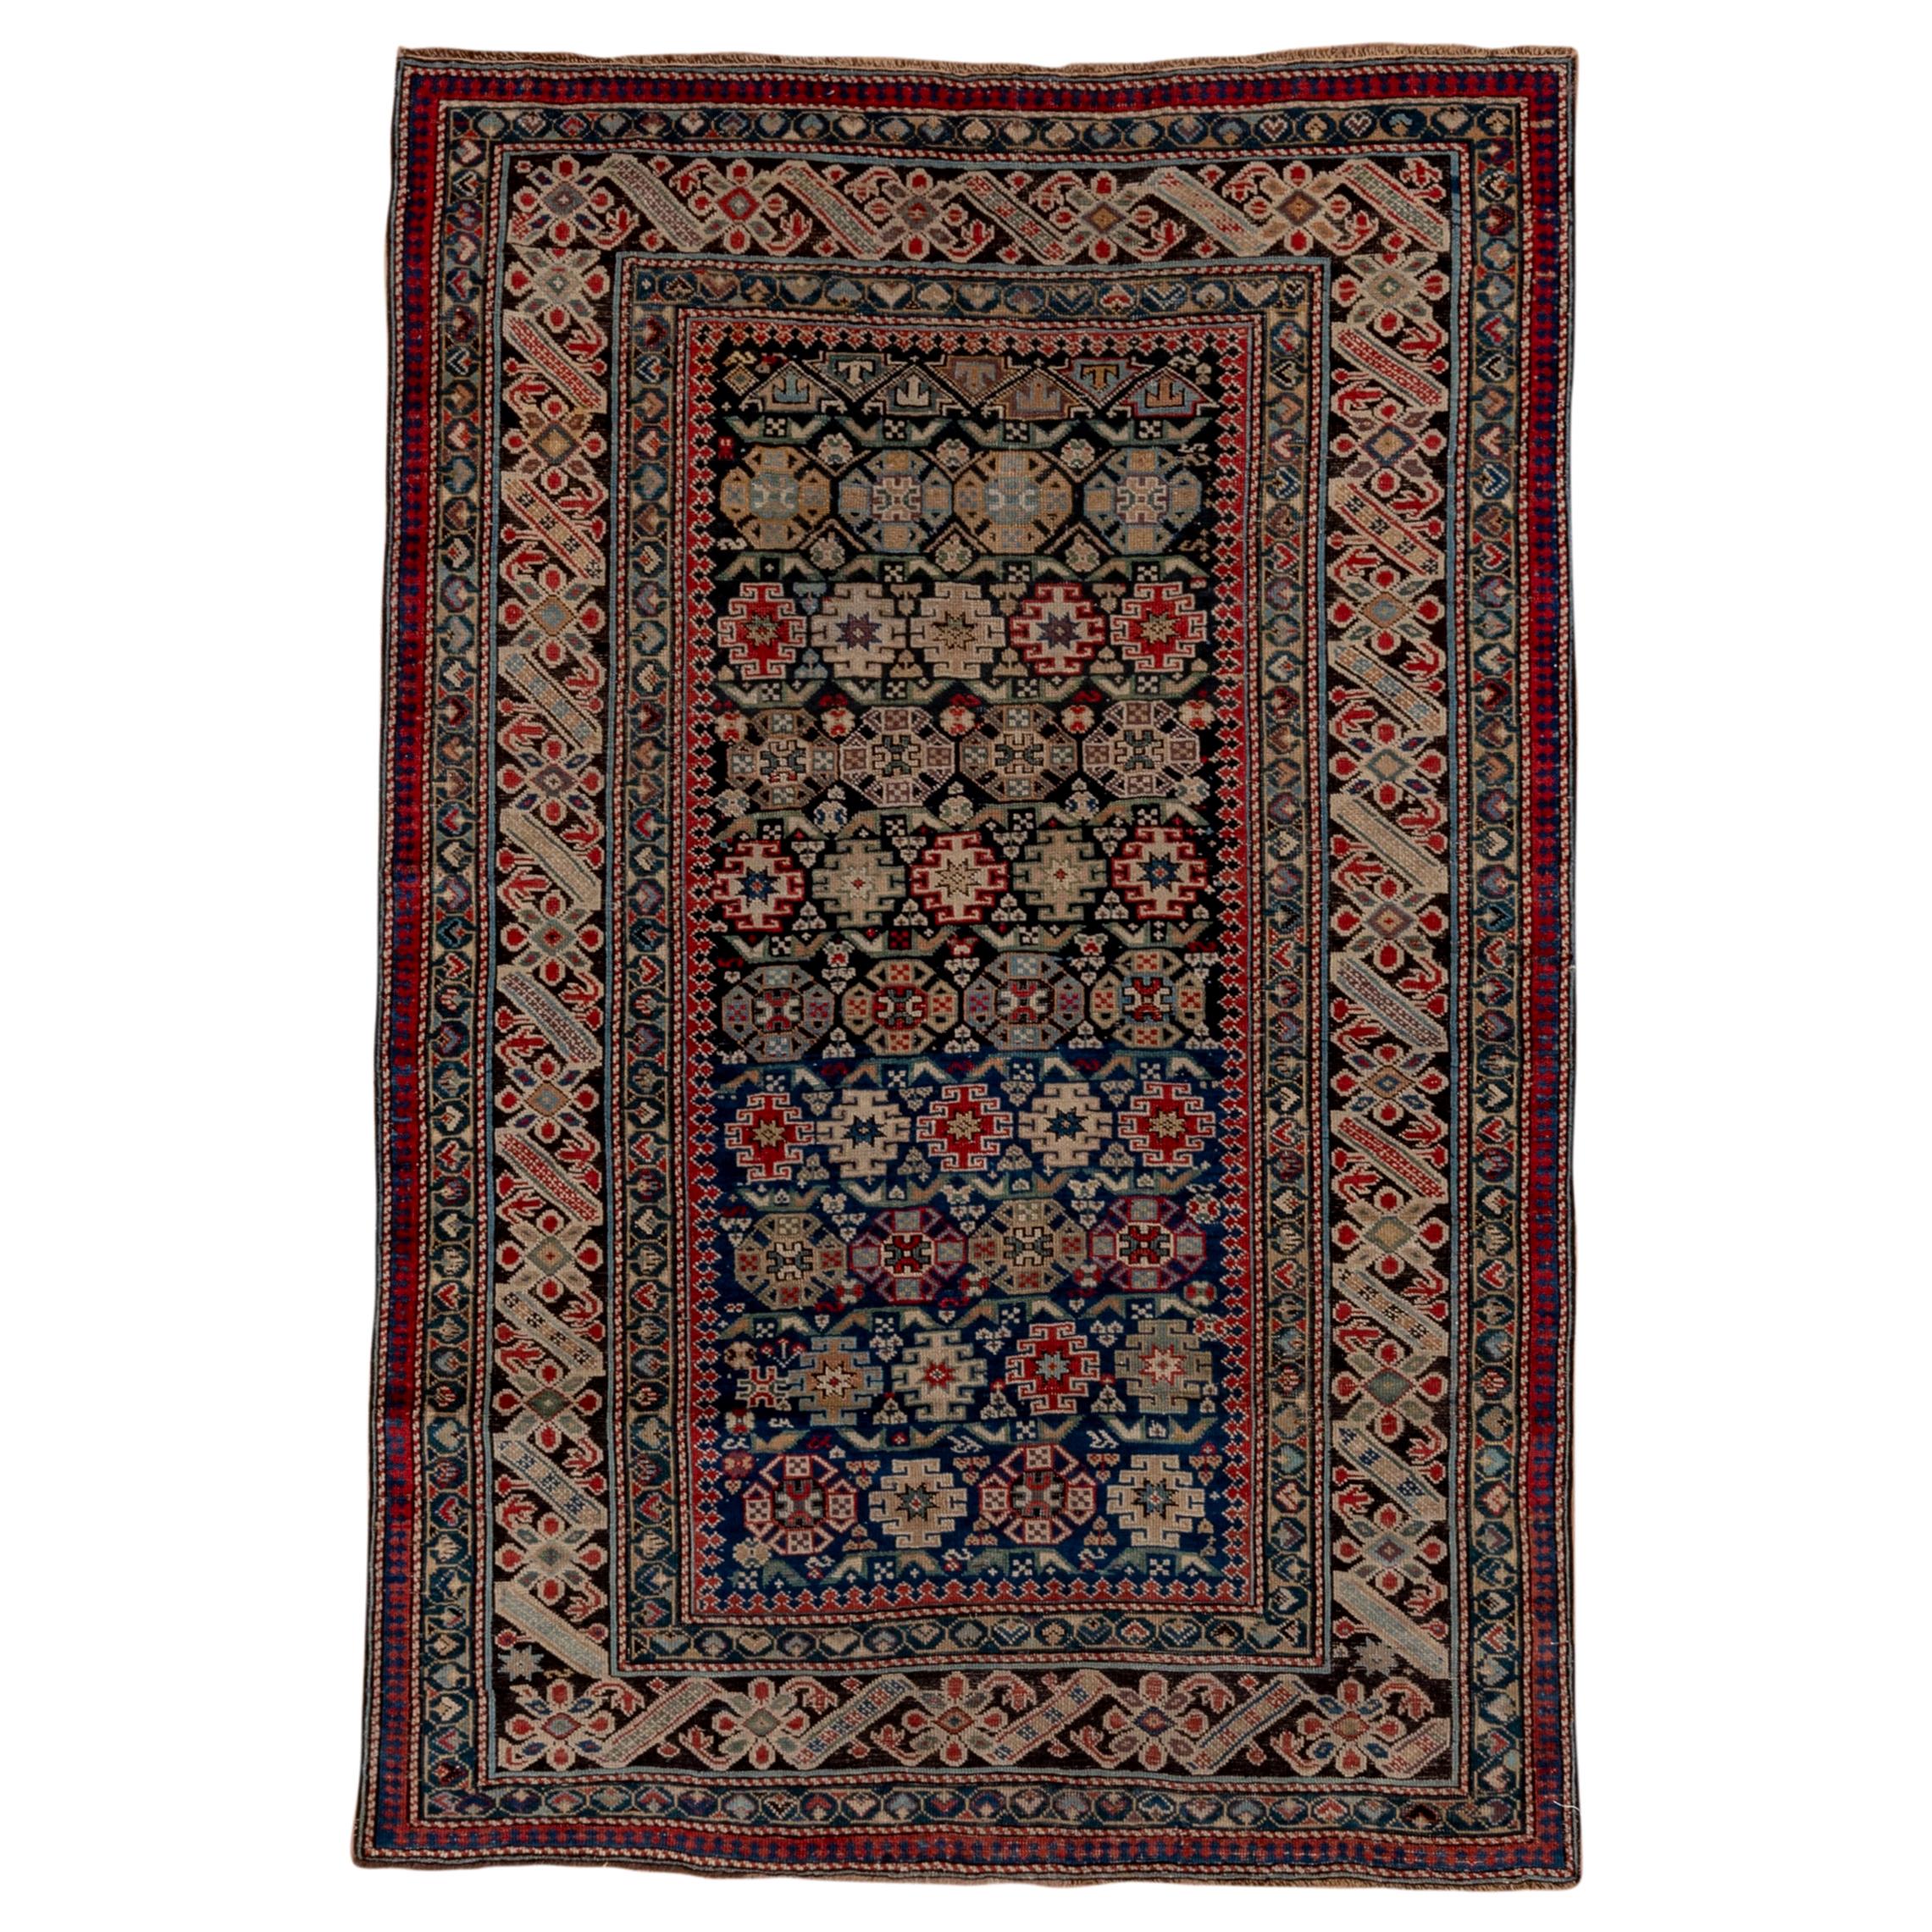 Seltener antiker kaukasischer Chichi-Teppich, um 1900